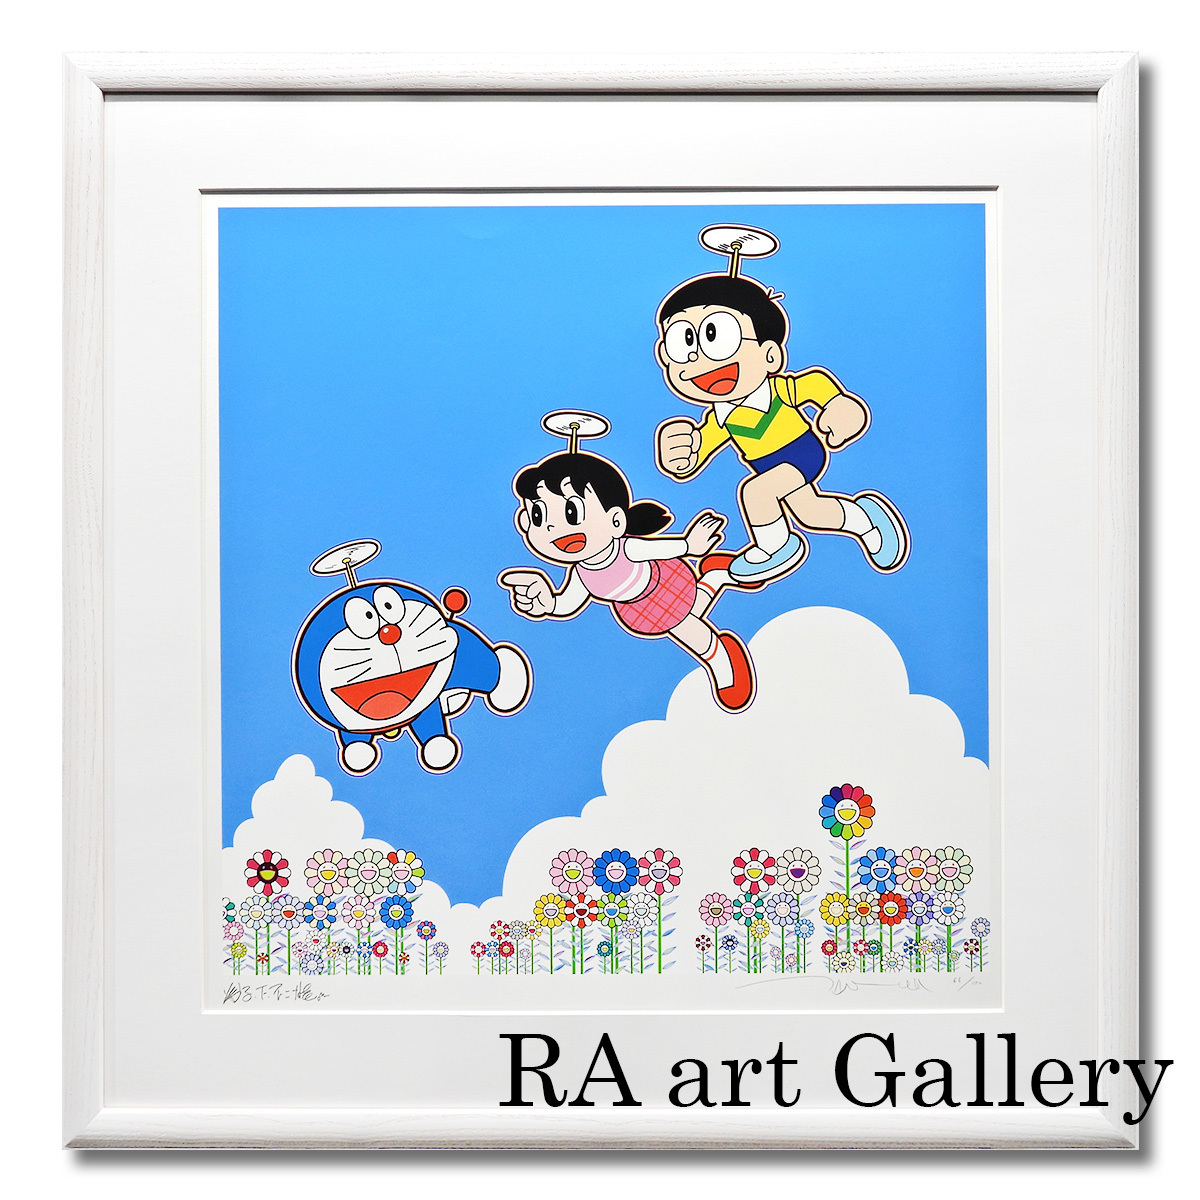 Nuevo Takashi Murakami ¡Puedes ir a cualquier parte! ¡Qué cielo tan azul! Doraemon Autógrafo del artista Arte moderno Manga Pintura enmarcada Autenticidad garantizada, obra de arte, imprimir, pantalla de seda